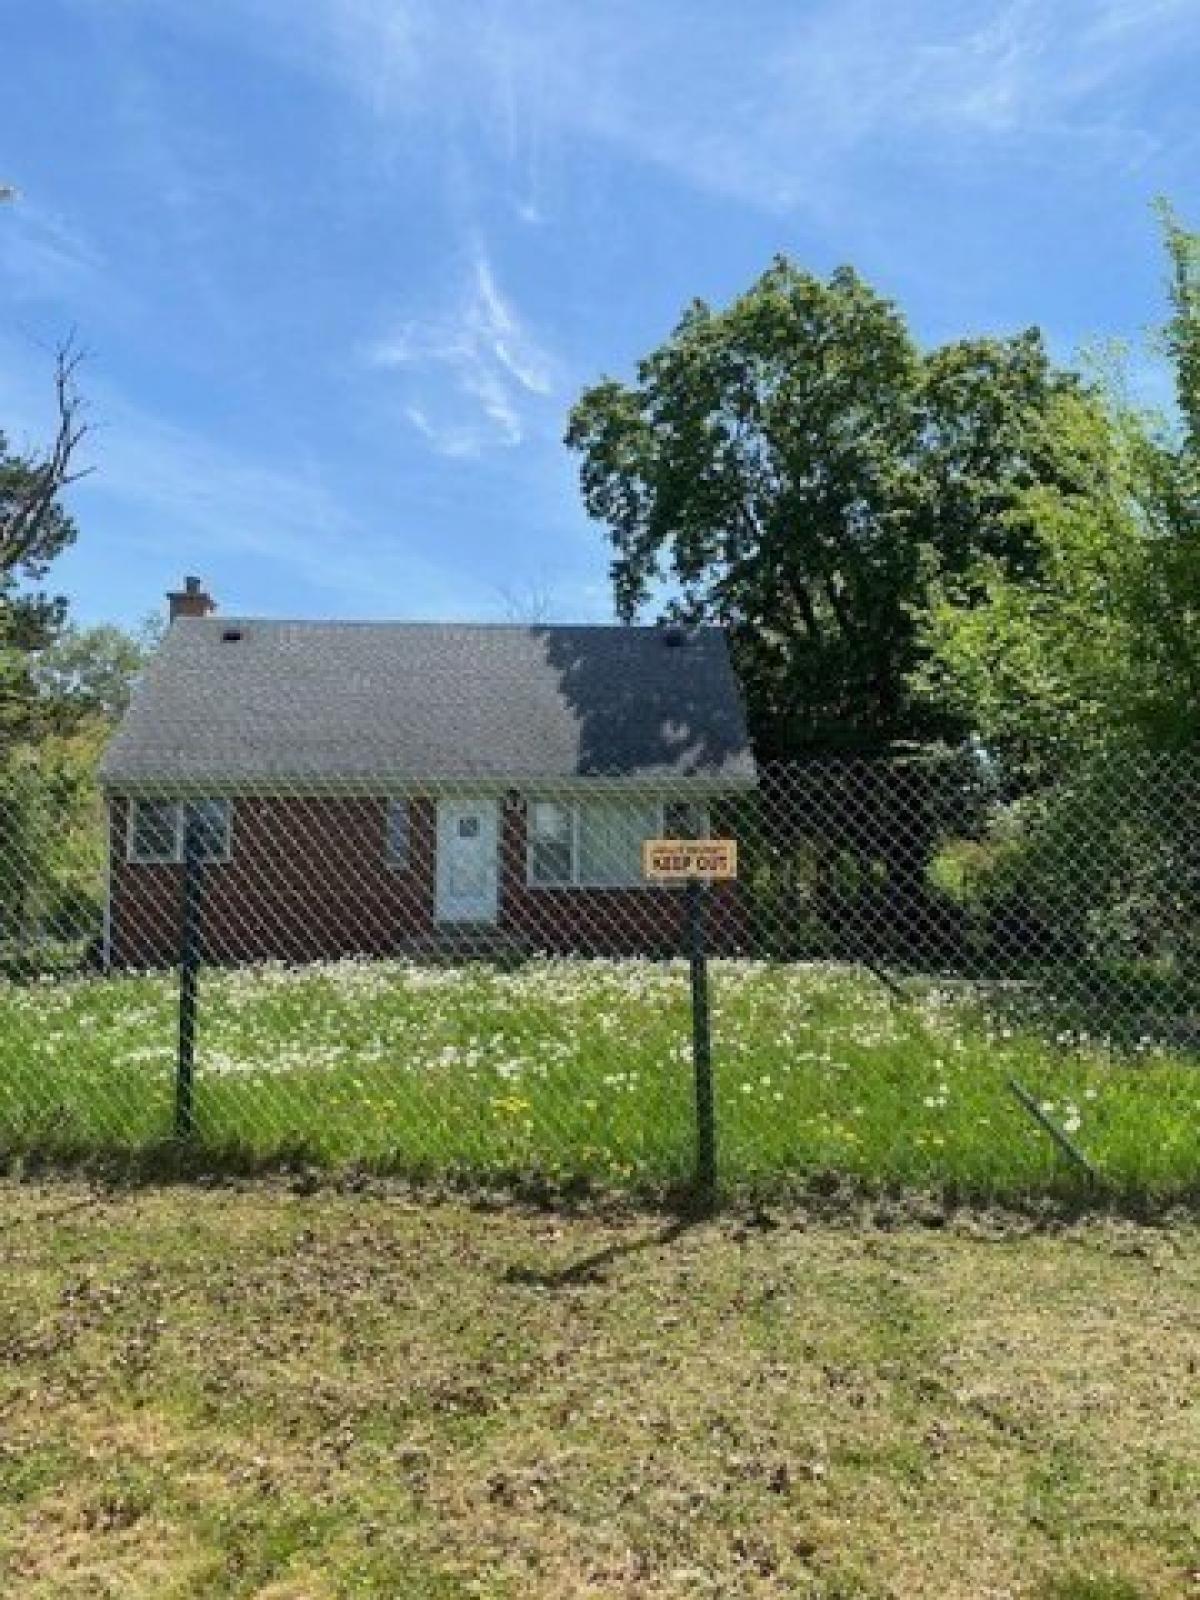 Picture of Home For Sale in Morton Grove, Illinois, United States